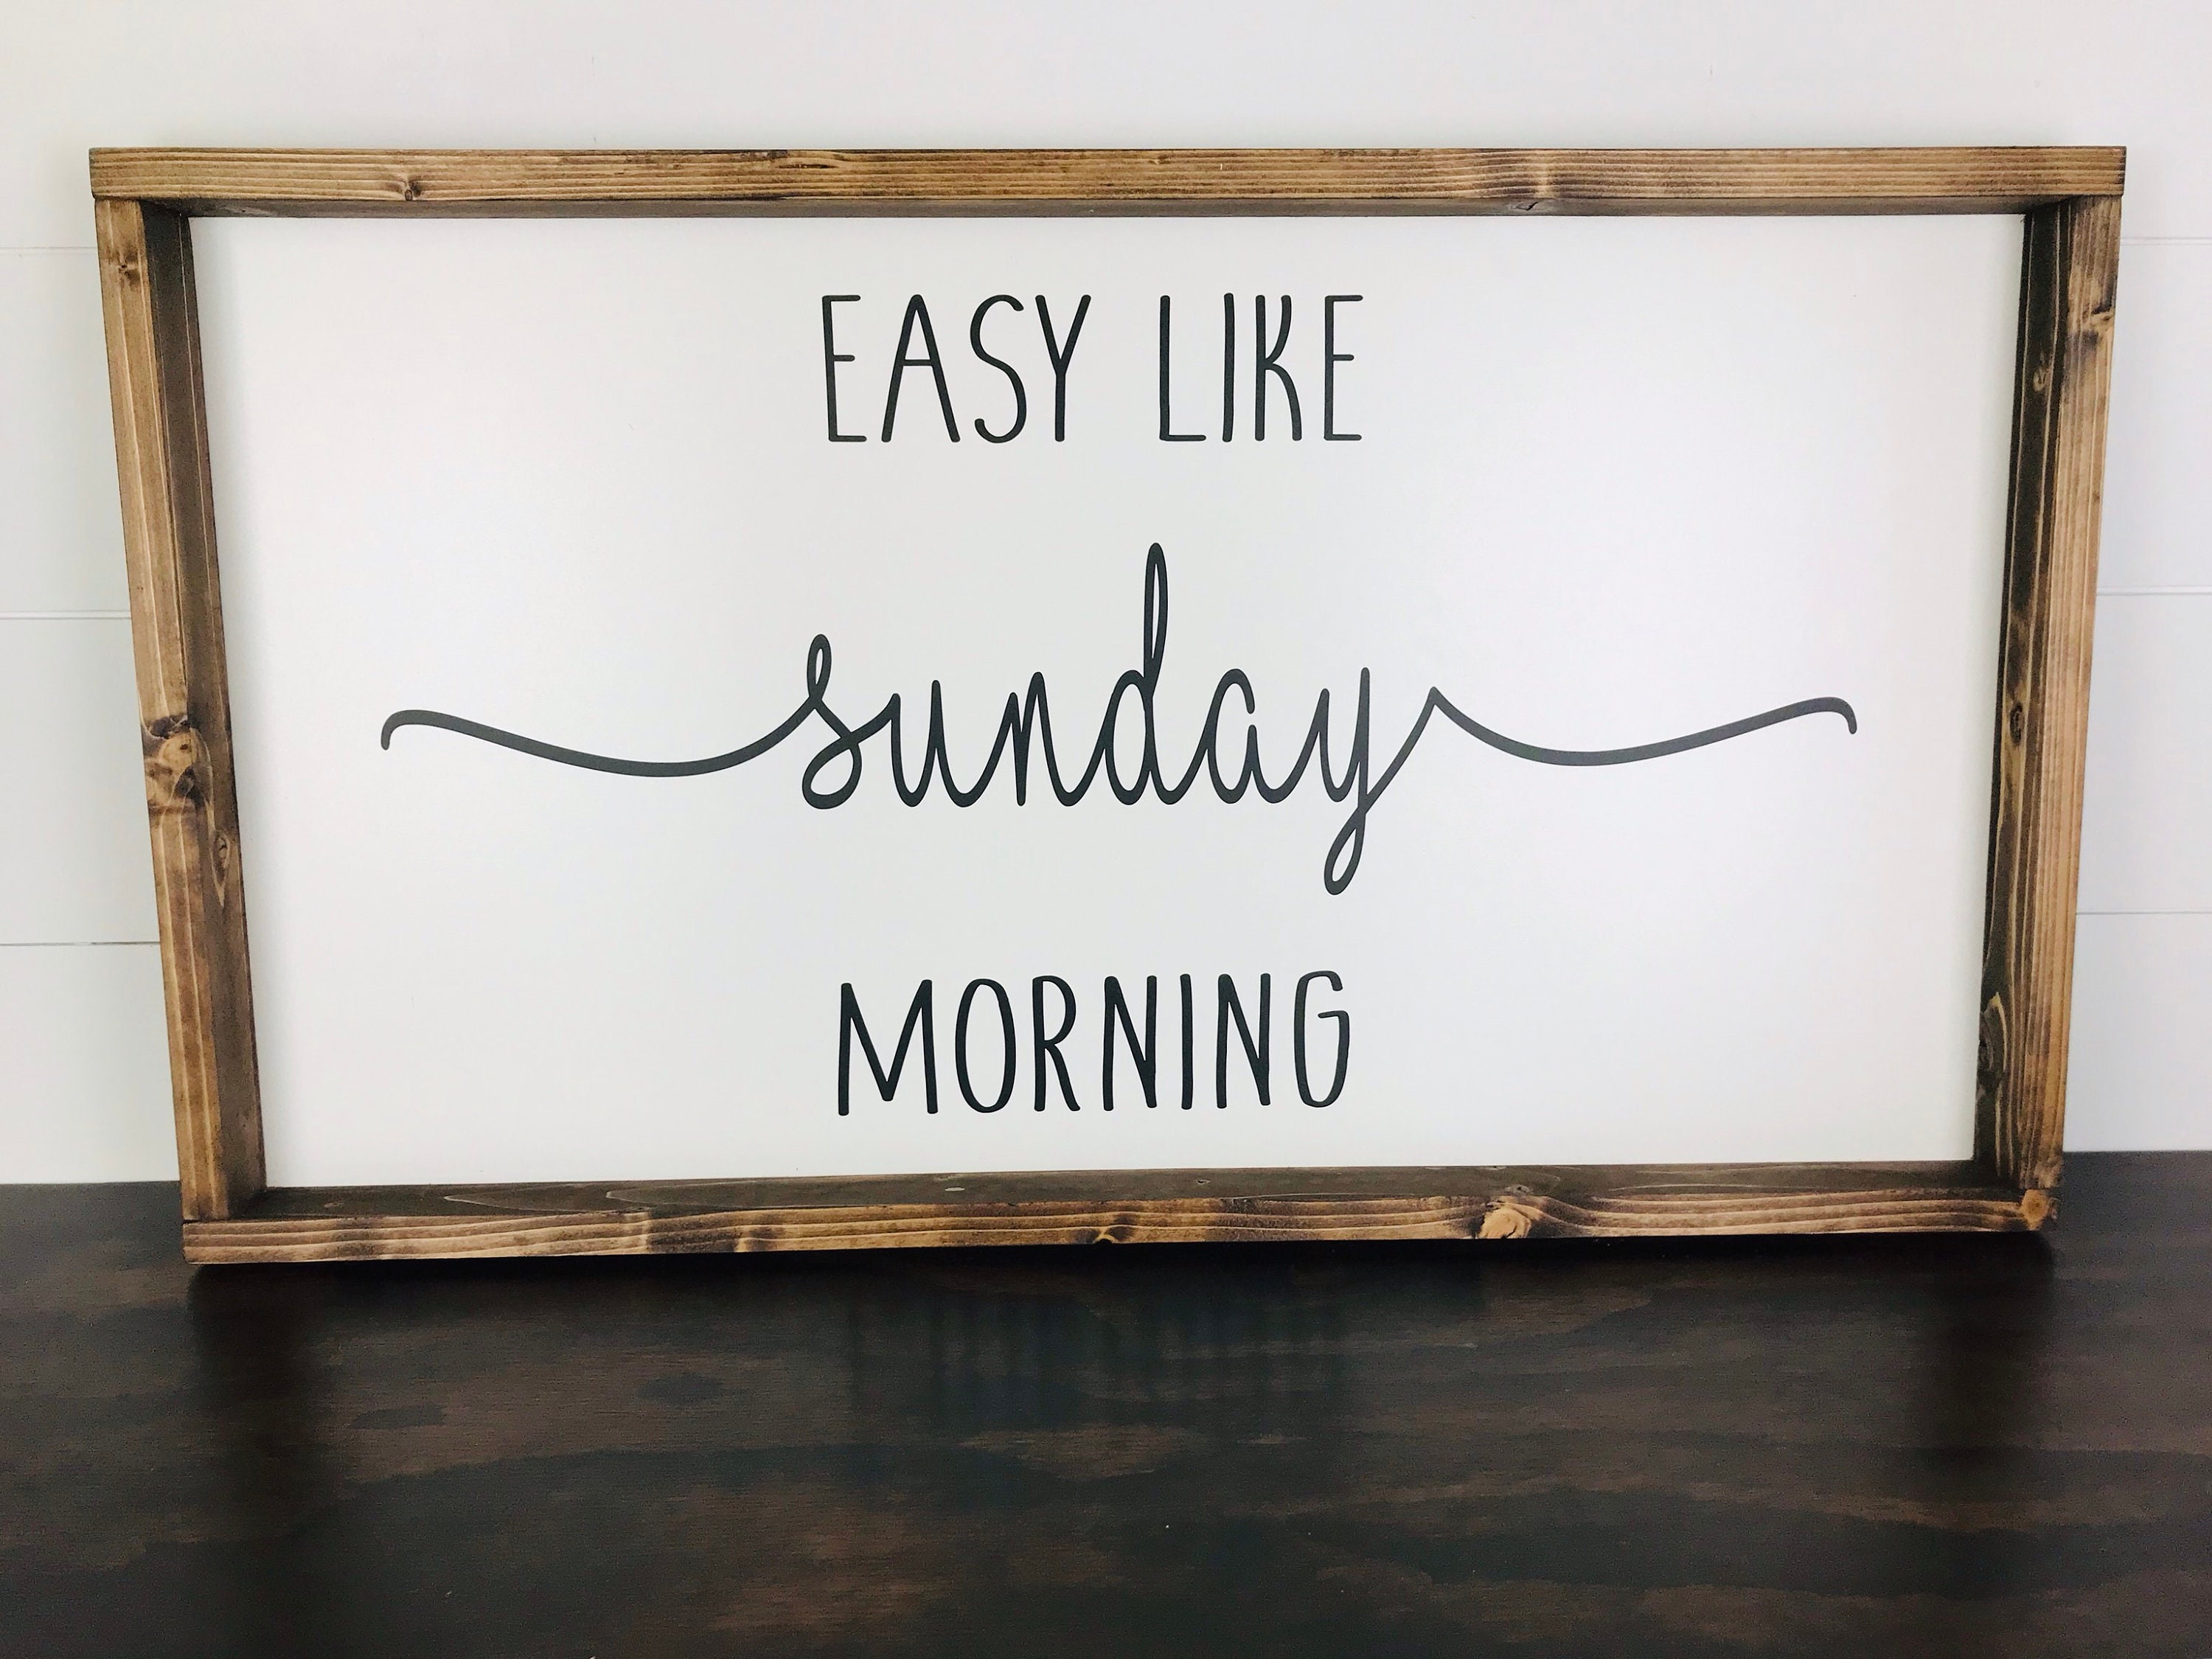 Easy like Sunday morning. Sunday morning Wood. Quote sign. Easy like go